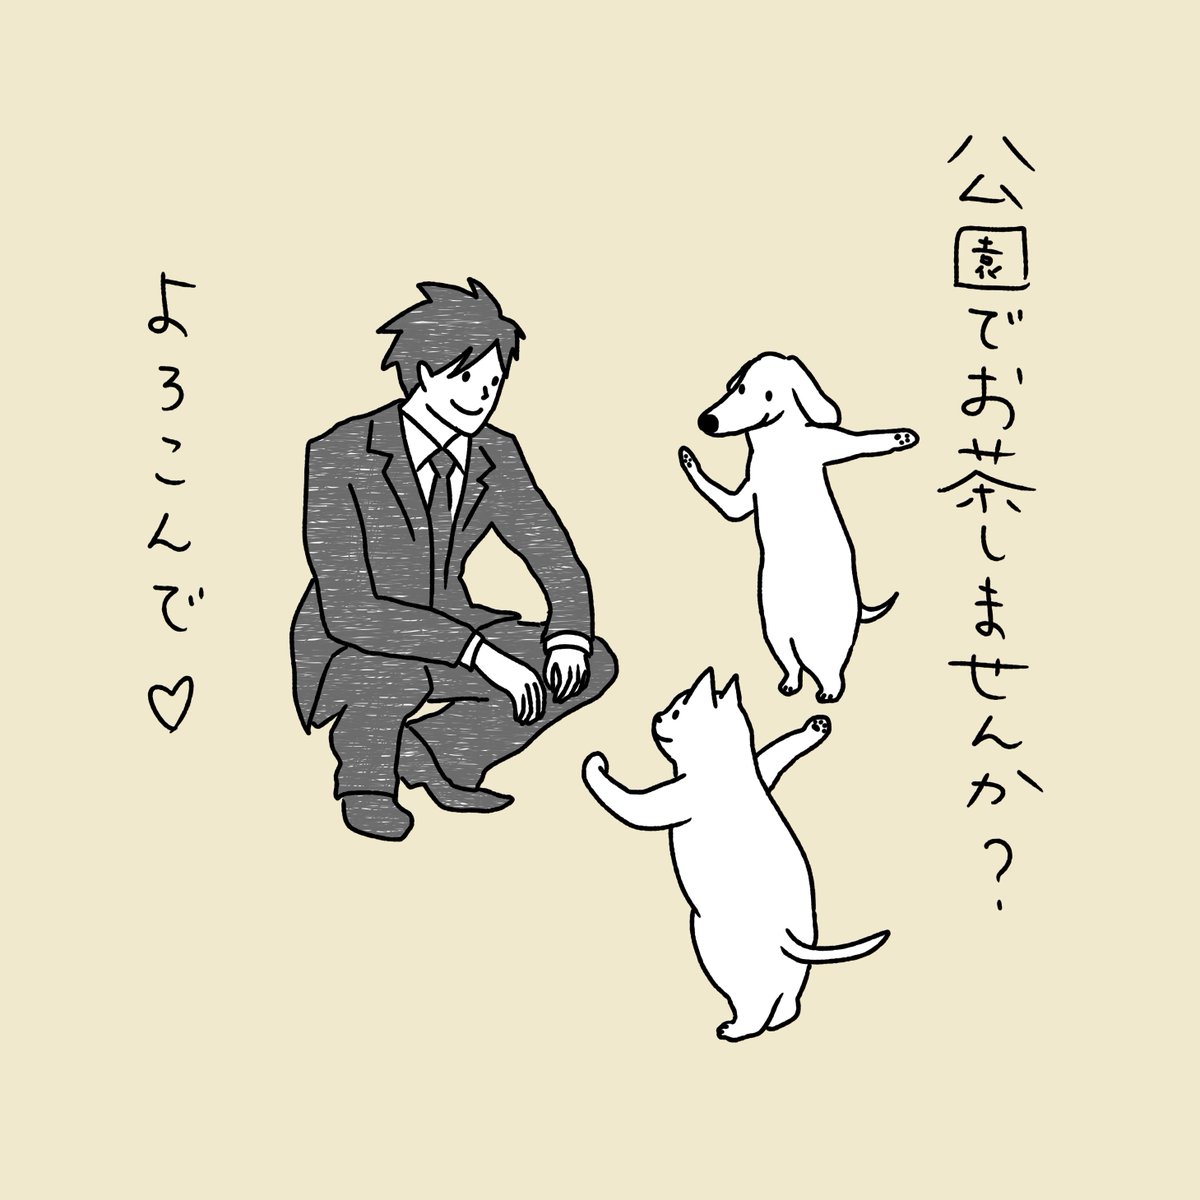 石川ともこ در توییتر ナンパの日 いいことありますように Illustration イラスト Cat 猫 ねこ しろさん 犬 Dog ナンパの日